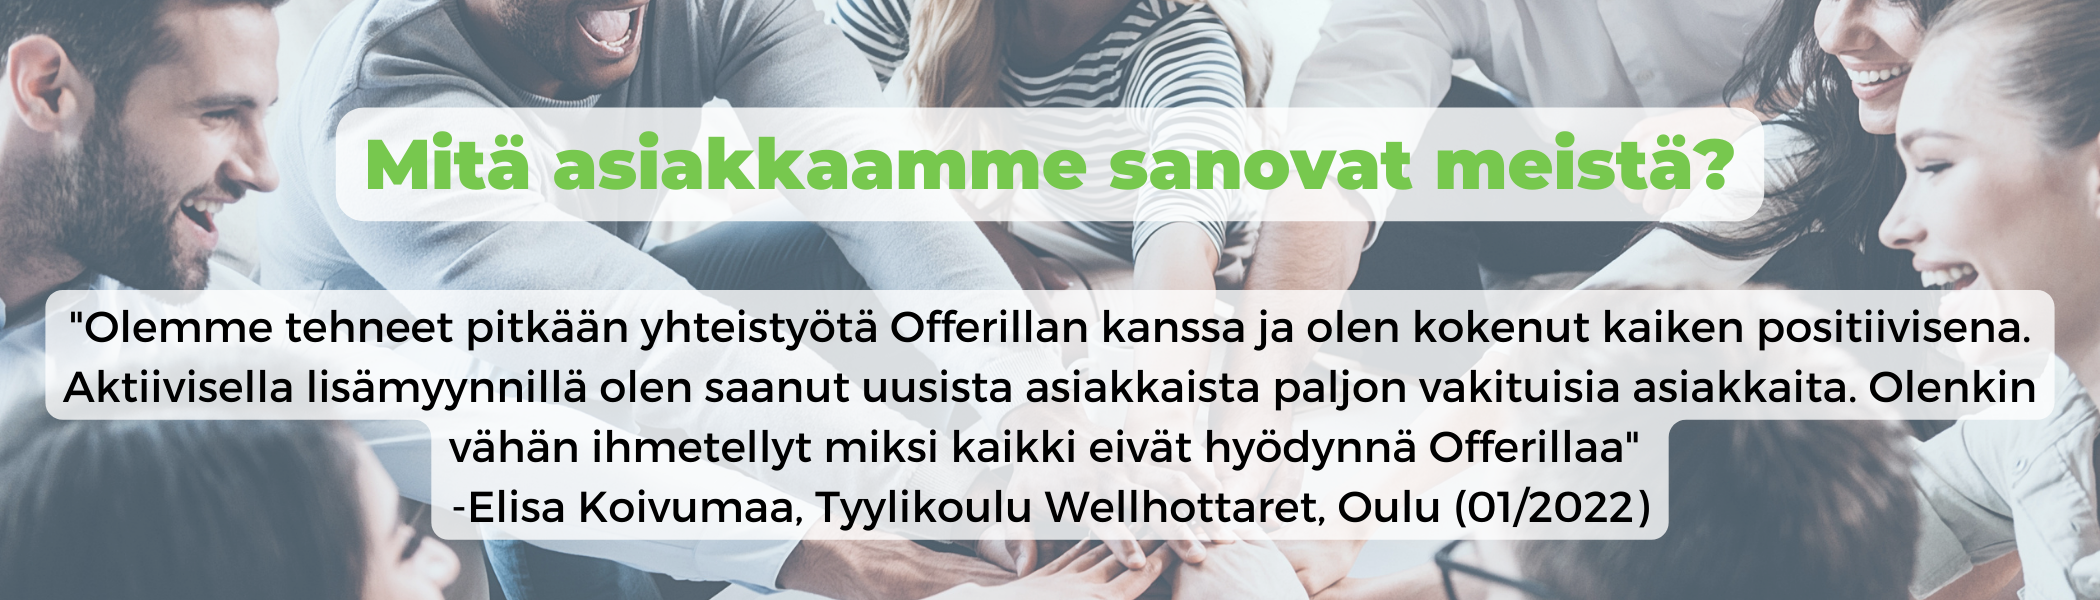 Referenssi. Elisa Koivumaa, Tyylikoulu Wellhottaret, Oulu